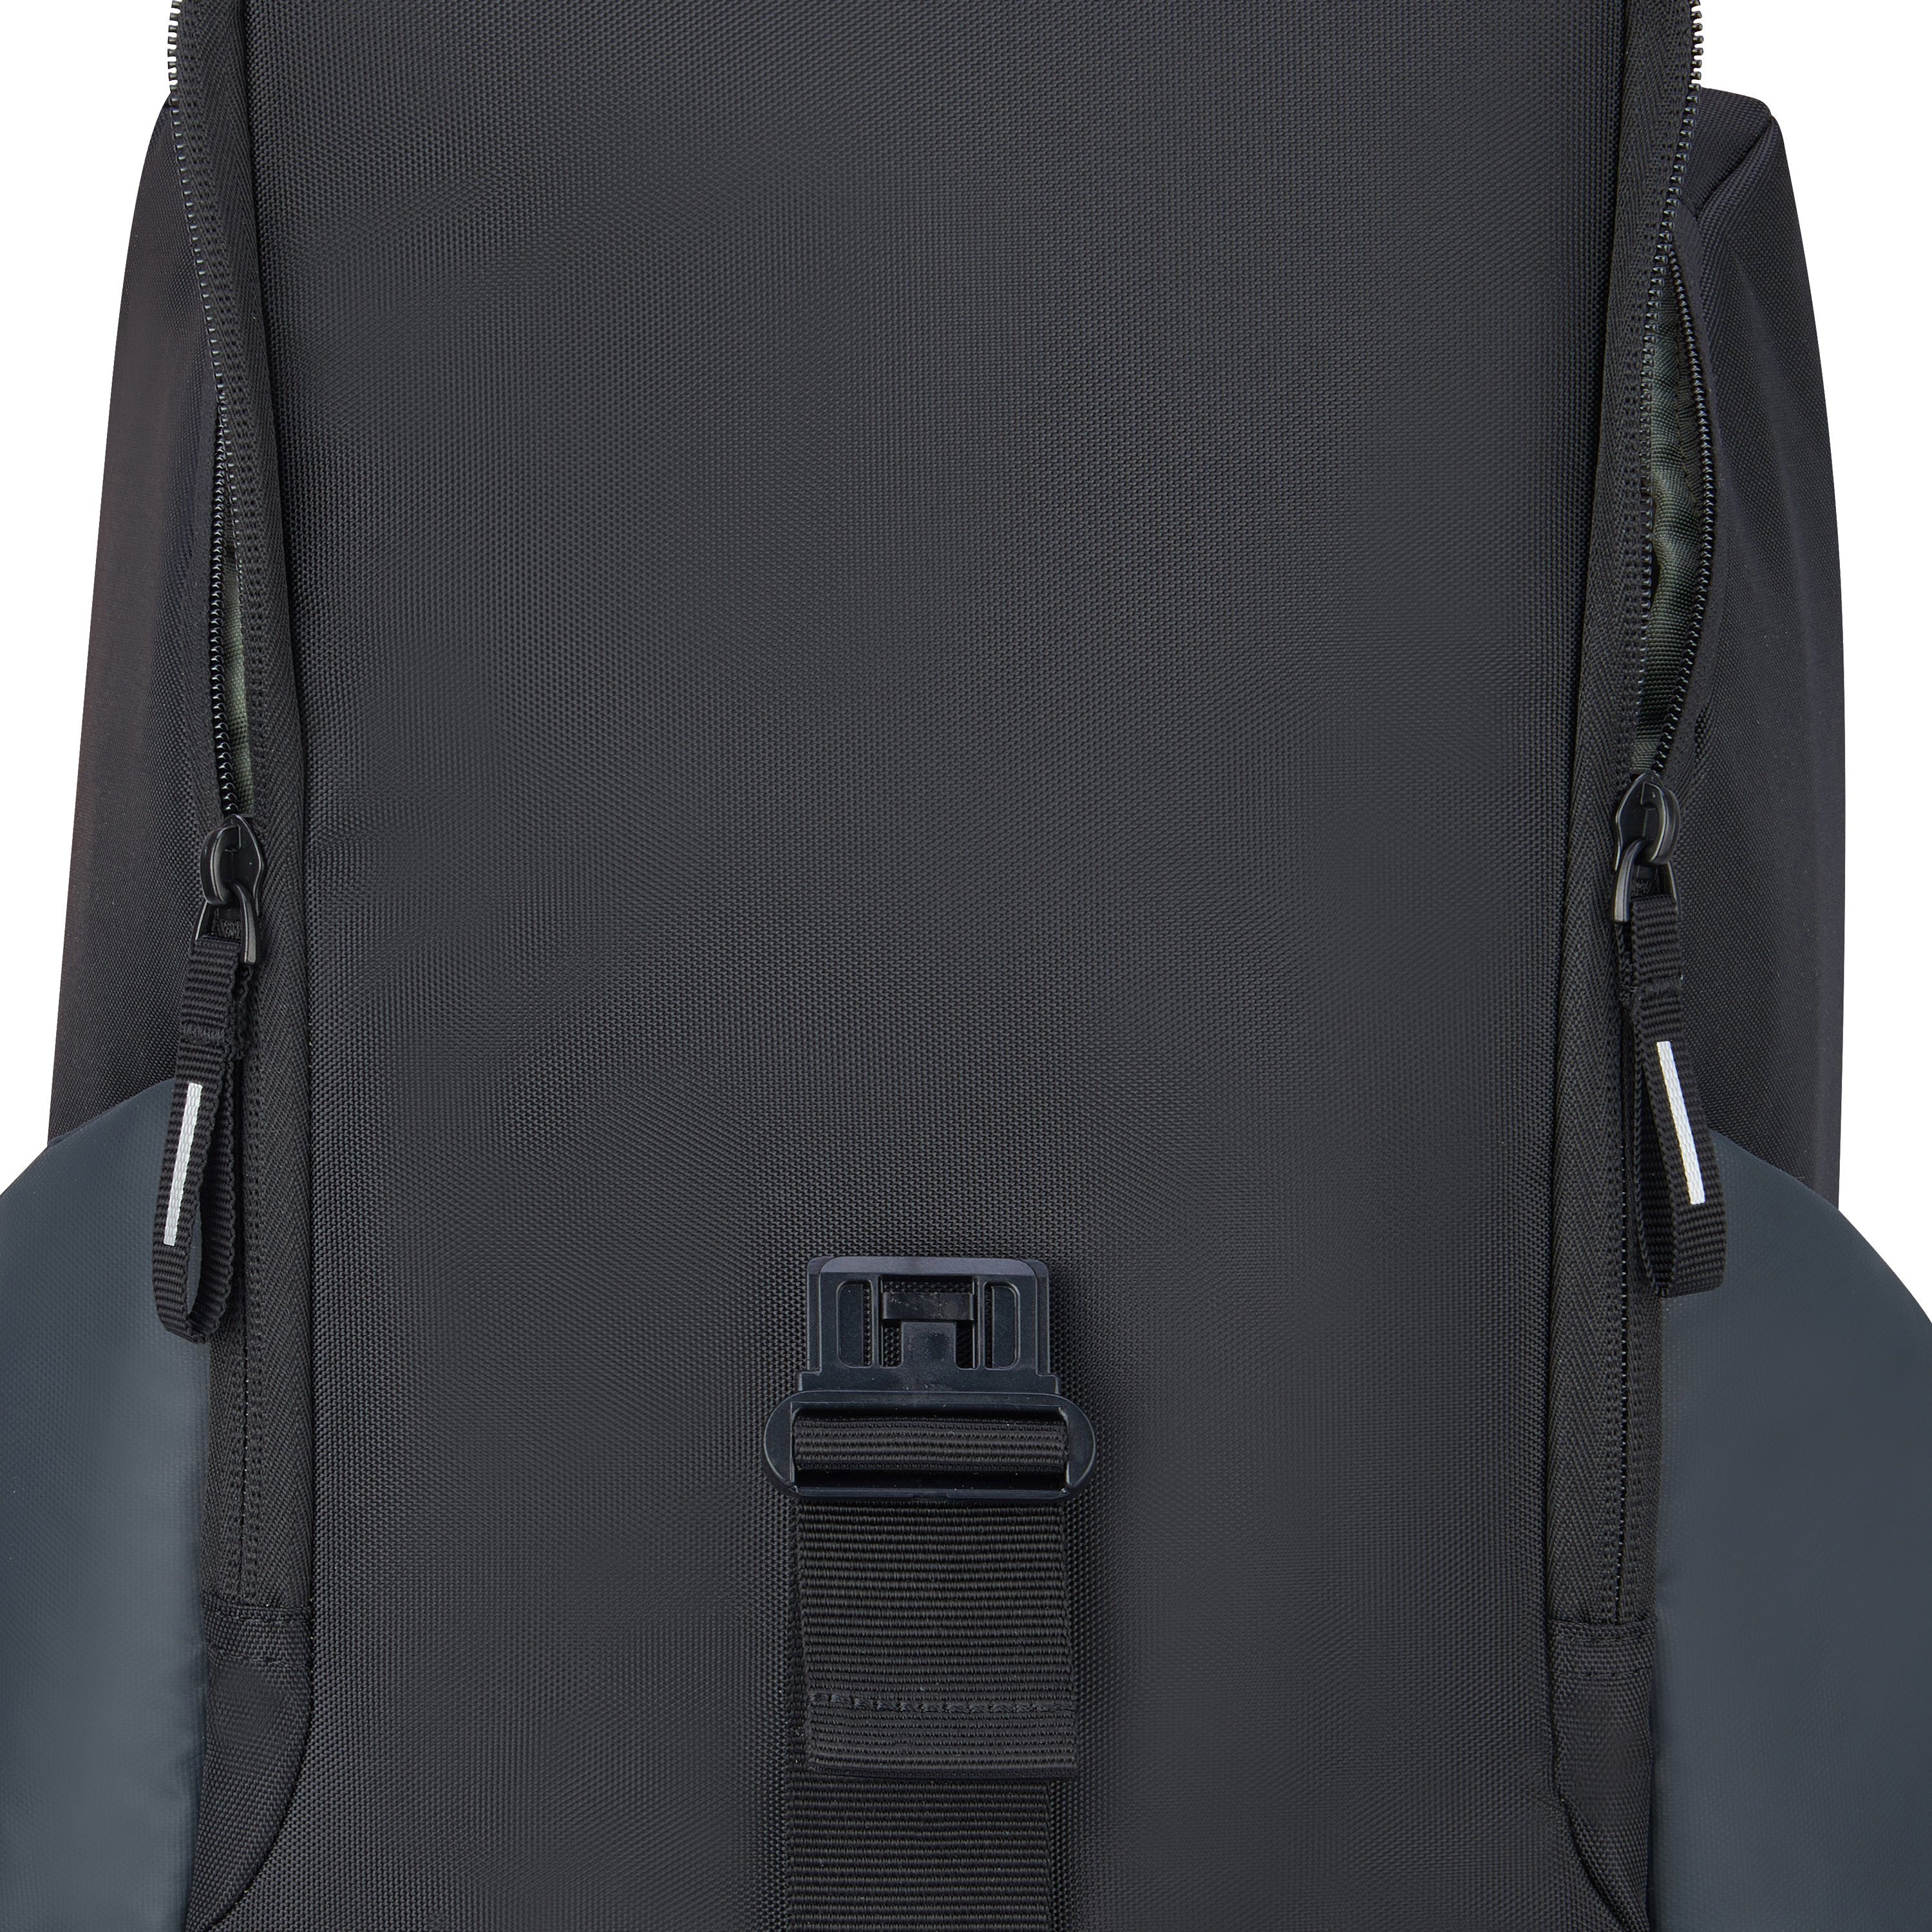 Delsey Laptoprucksack und Securflap, 15-6-Zoll Laptopfach black Anti-RFID-Fach mit gepolstetem